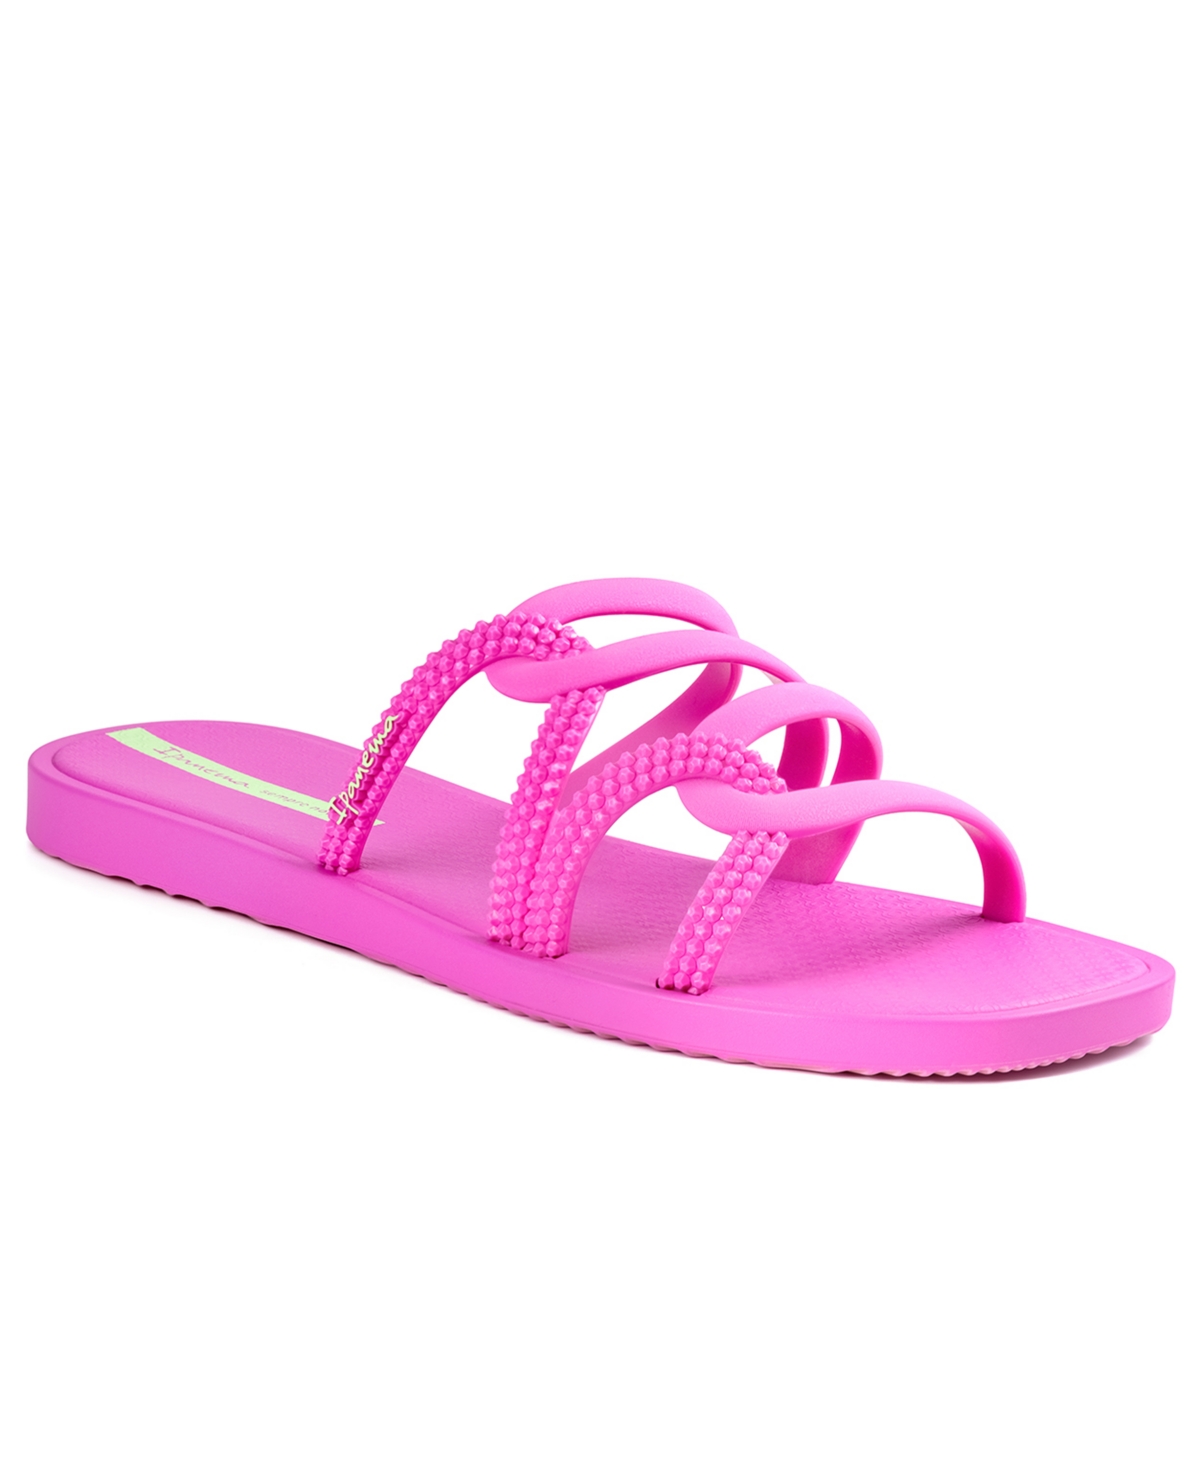 Ipanema Women's Solar Comfort Slide Sandals Women's Shoes